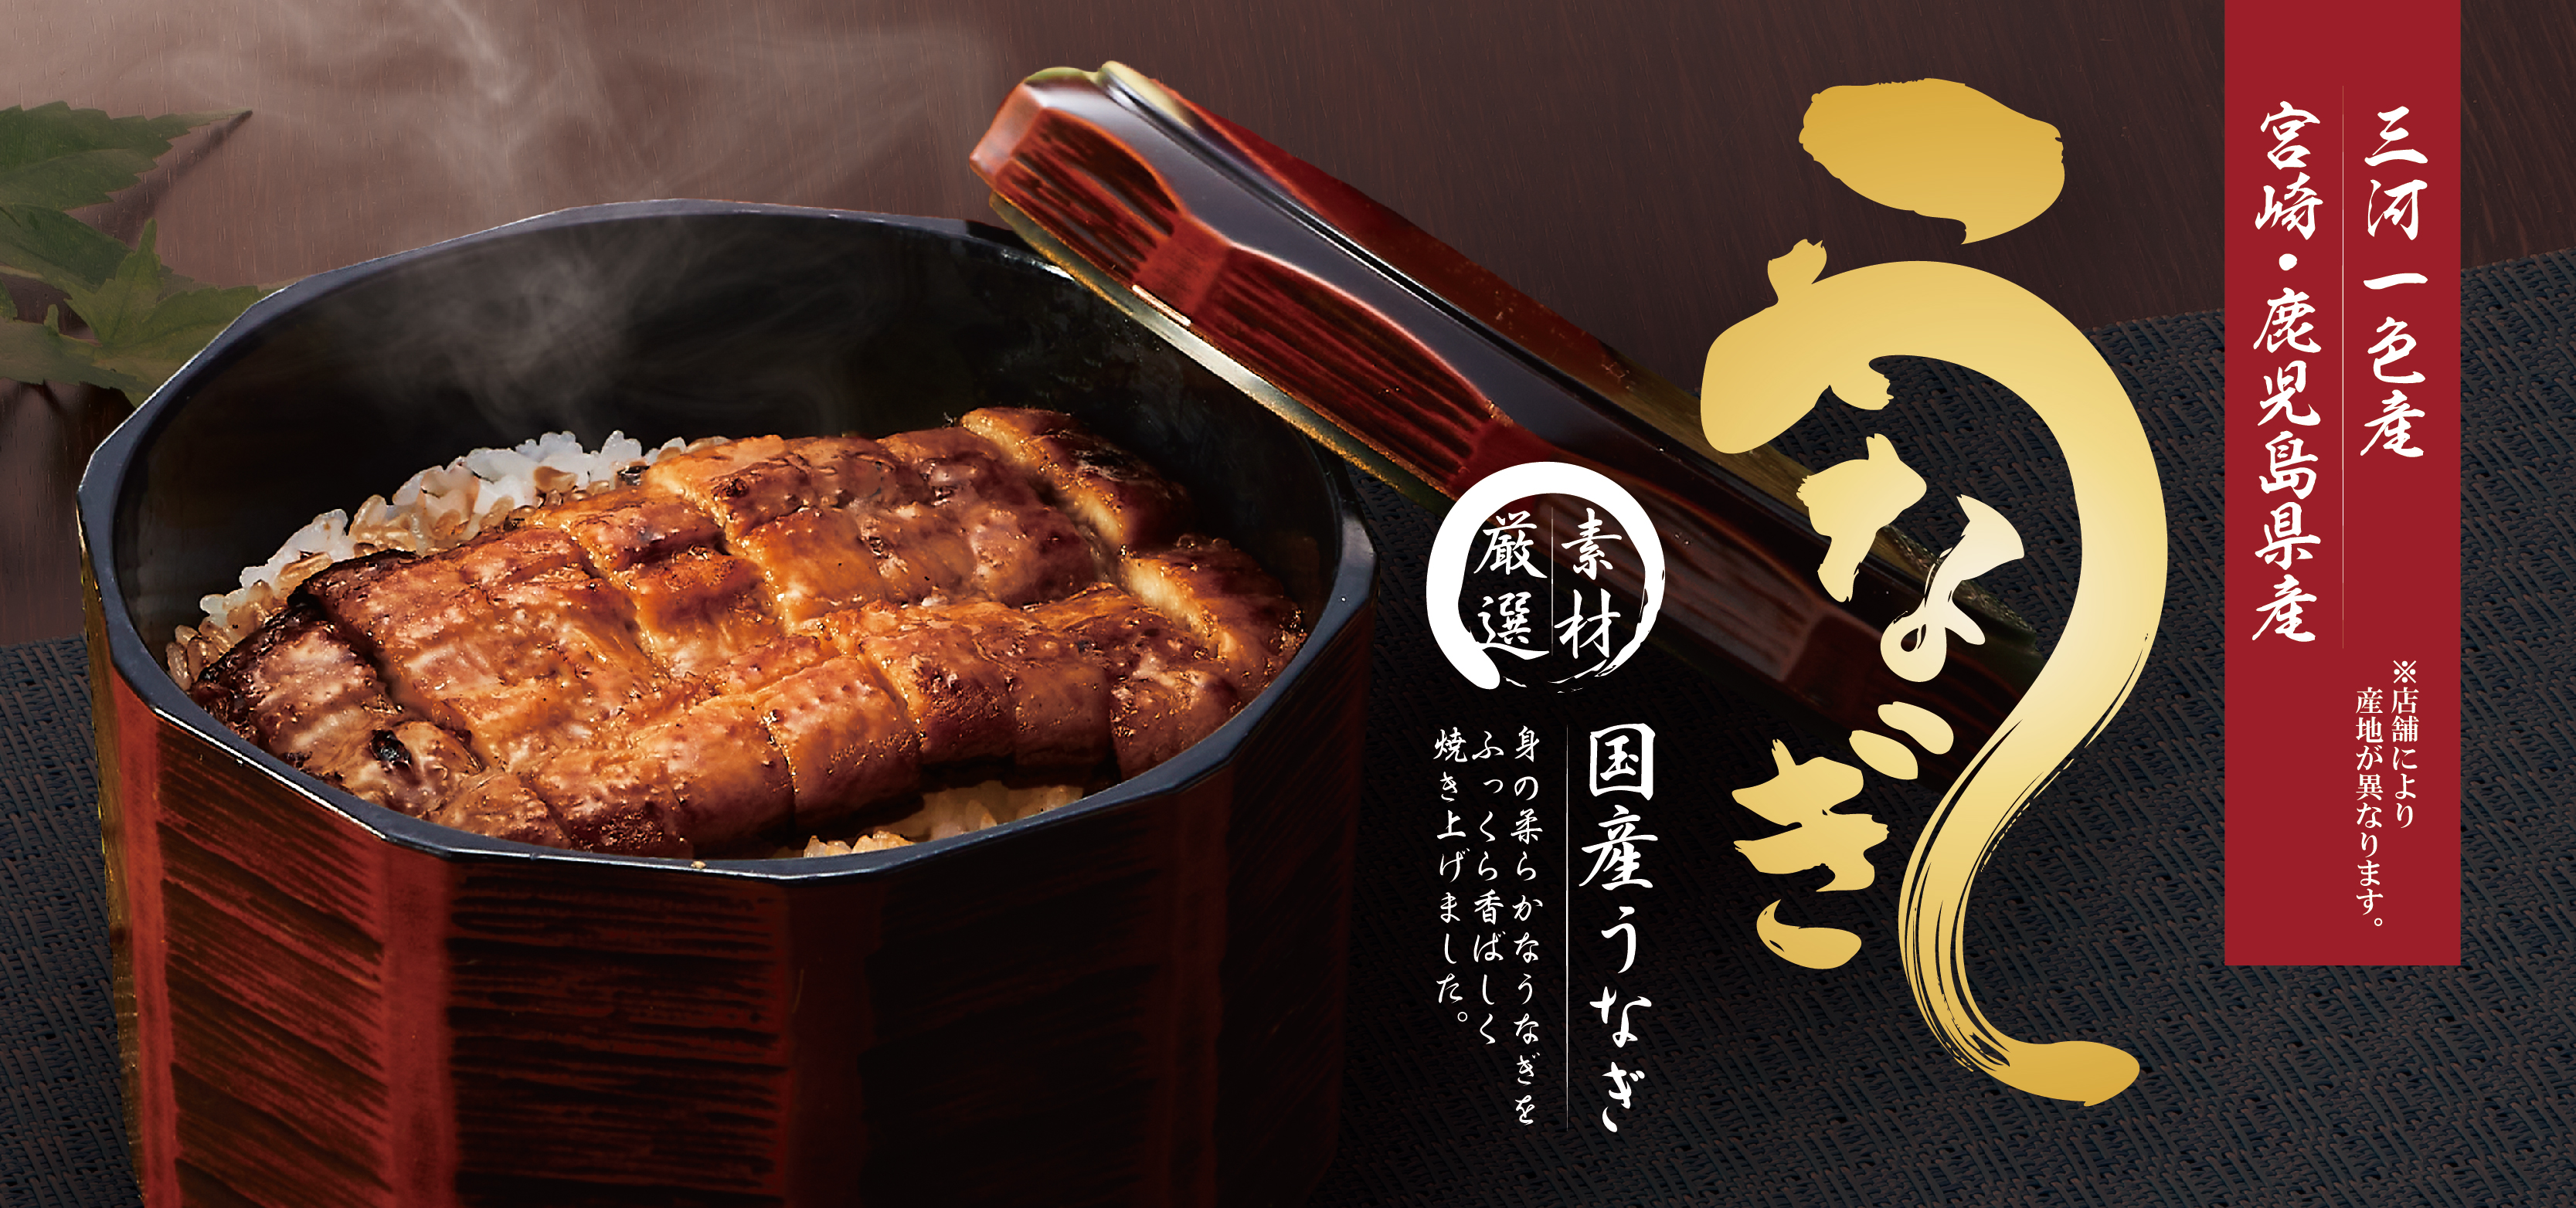 メニュー 和食麺処サガミは和食の原点とも言える蕎麦 みそ煮込 和食を主体とした店舗を東海地区に展開